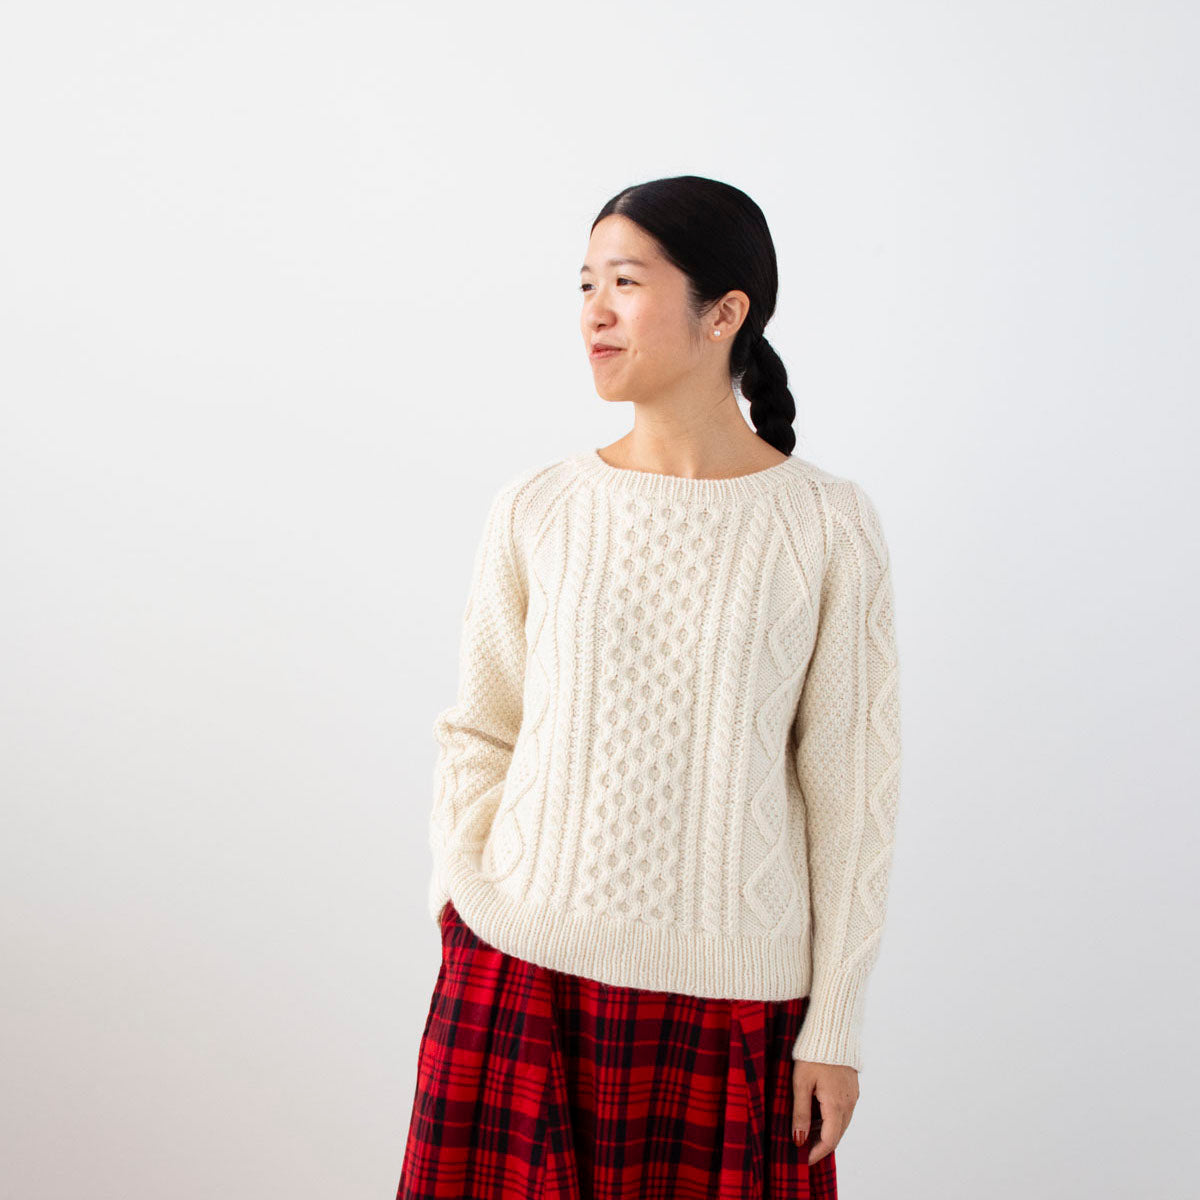 Aran Sweater Yarn Set